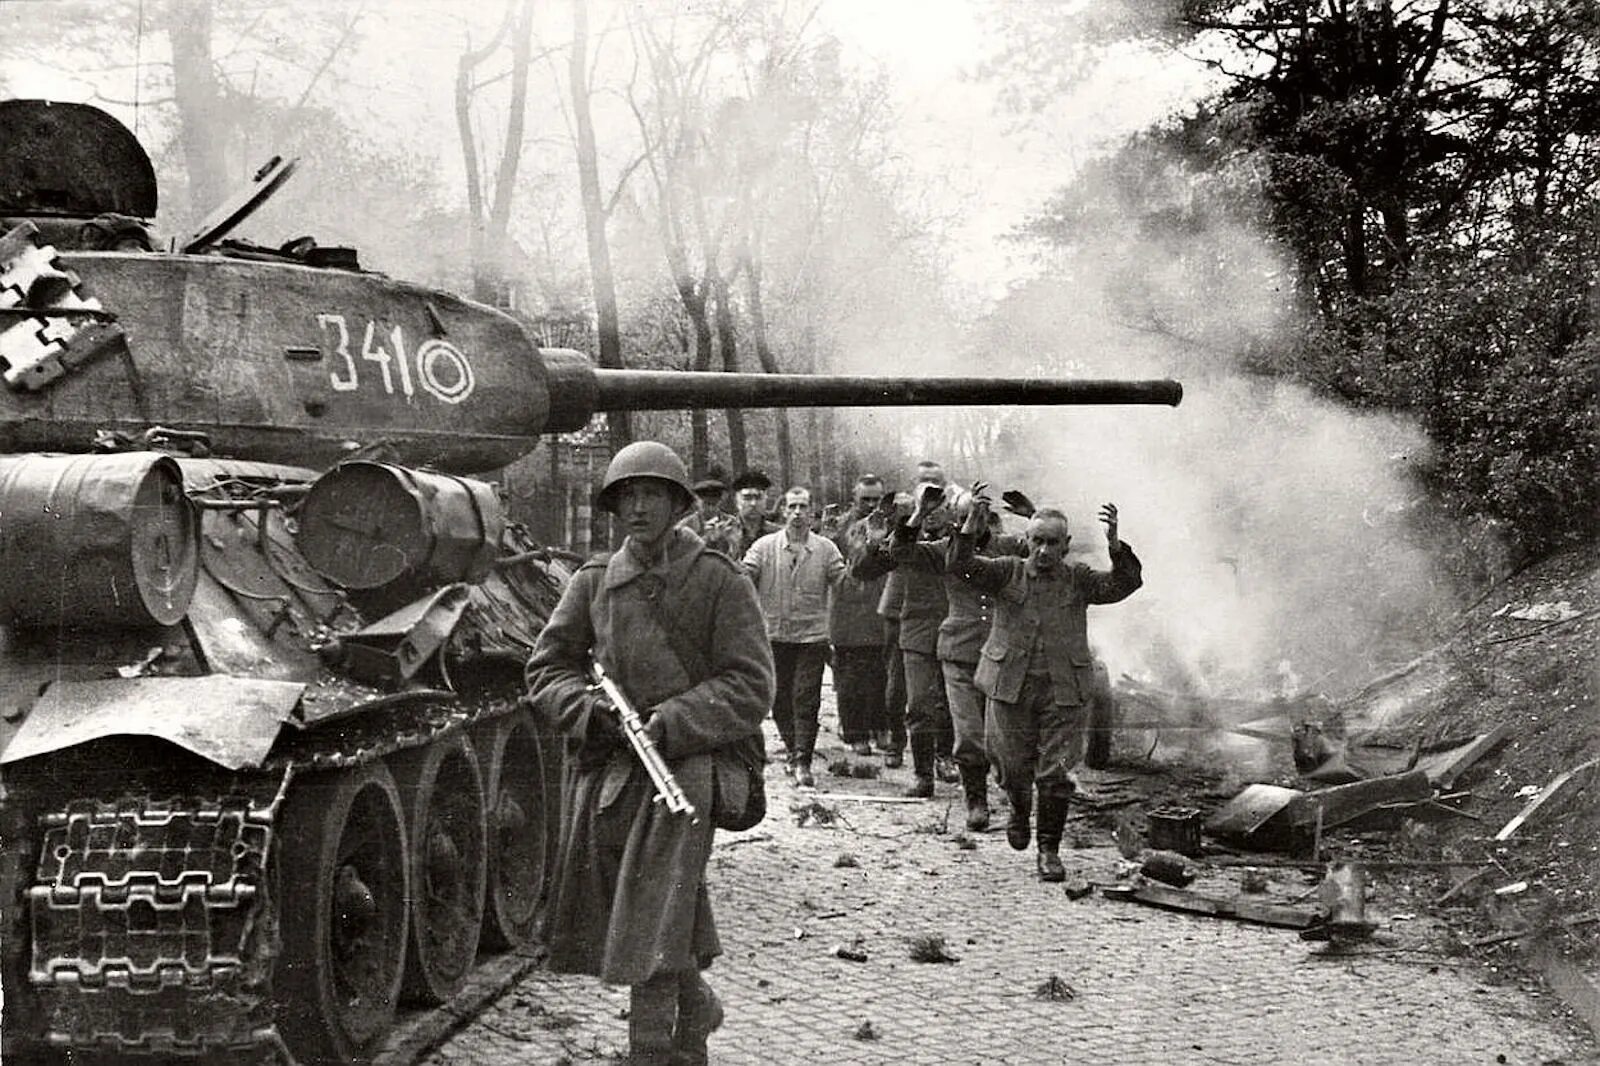 Оружие Победы т34 1945 года-. Танк т 34 в Берлине. Танк т-34 в бою. Картинки про великую отечественную